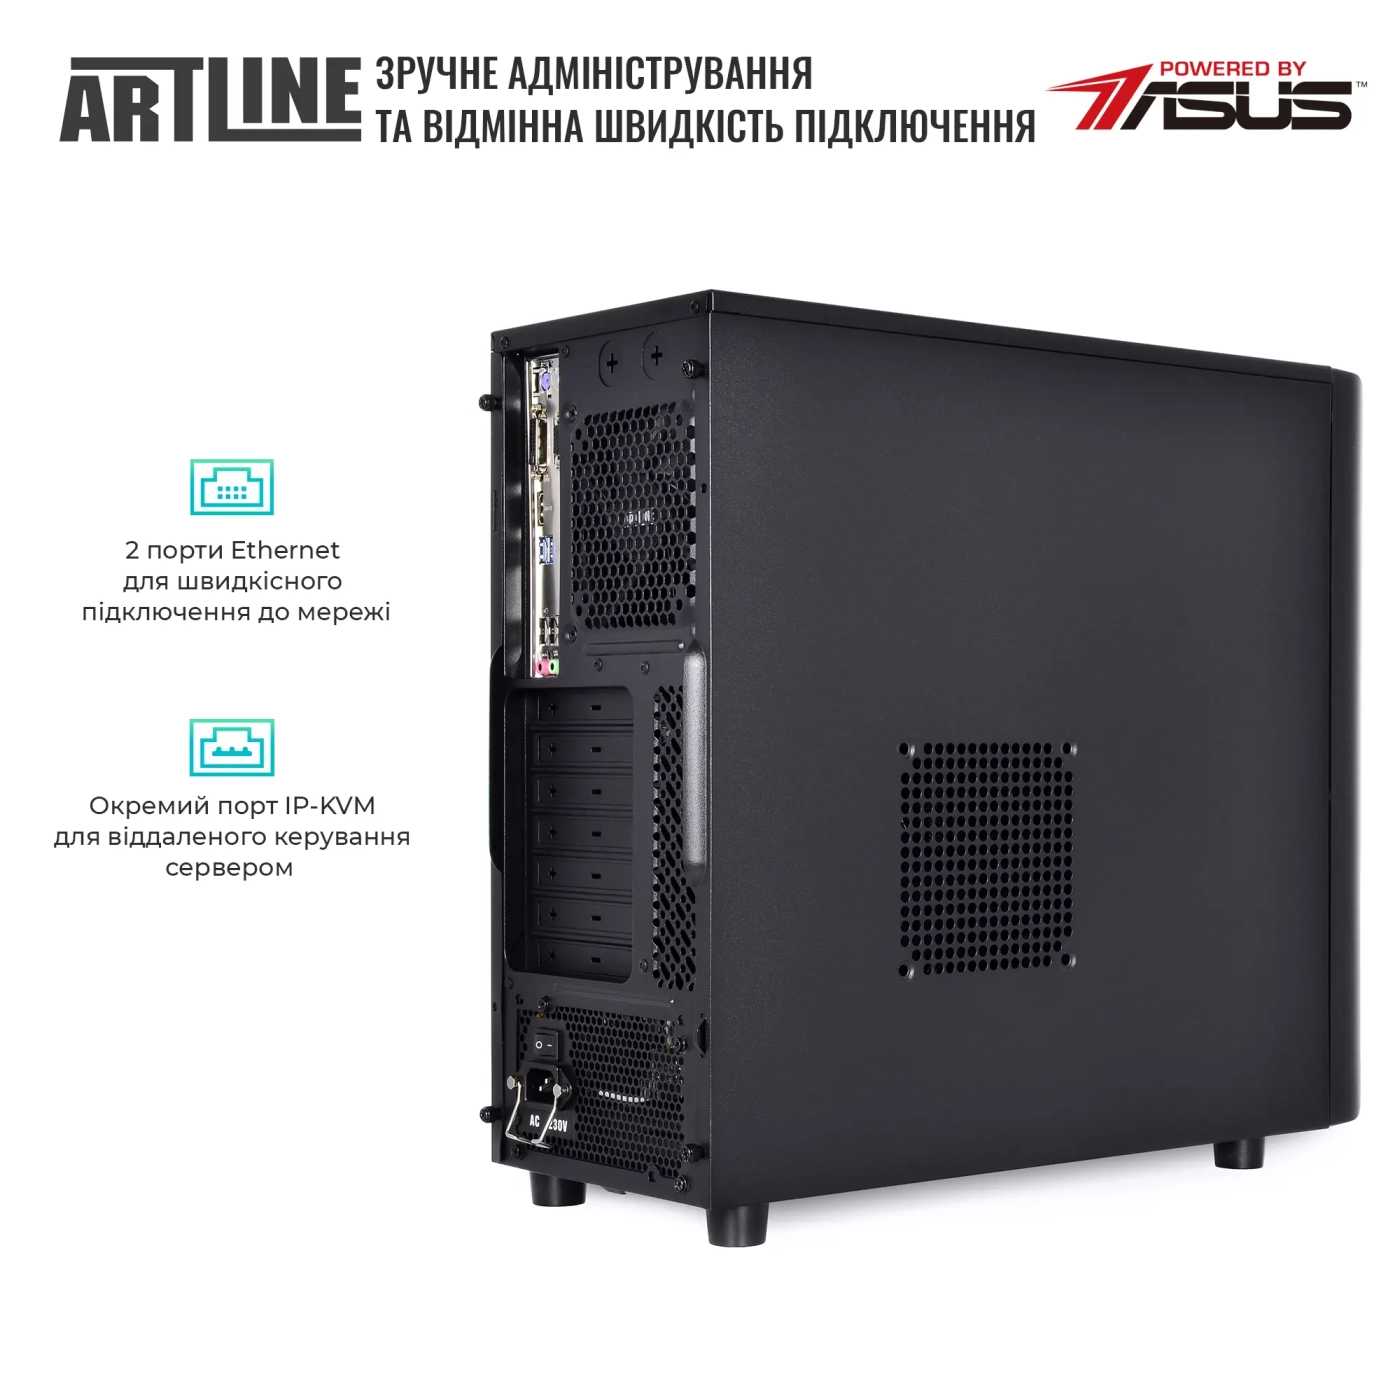 Купить Сервер ARTLINE Business T37 (T37v36) - фото 5